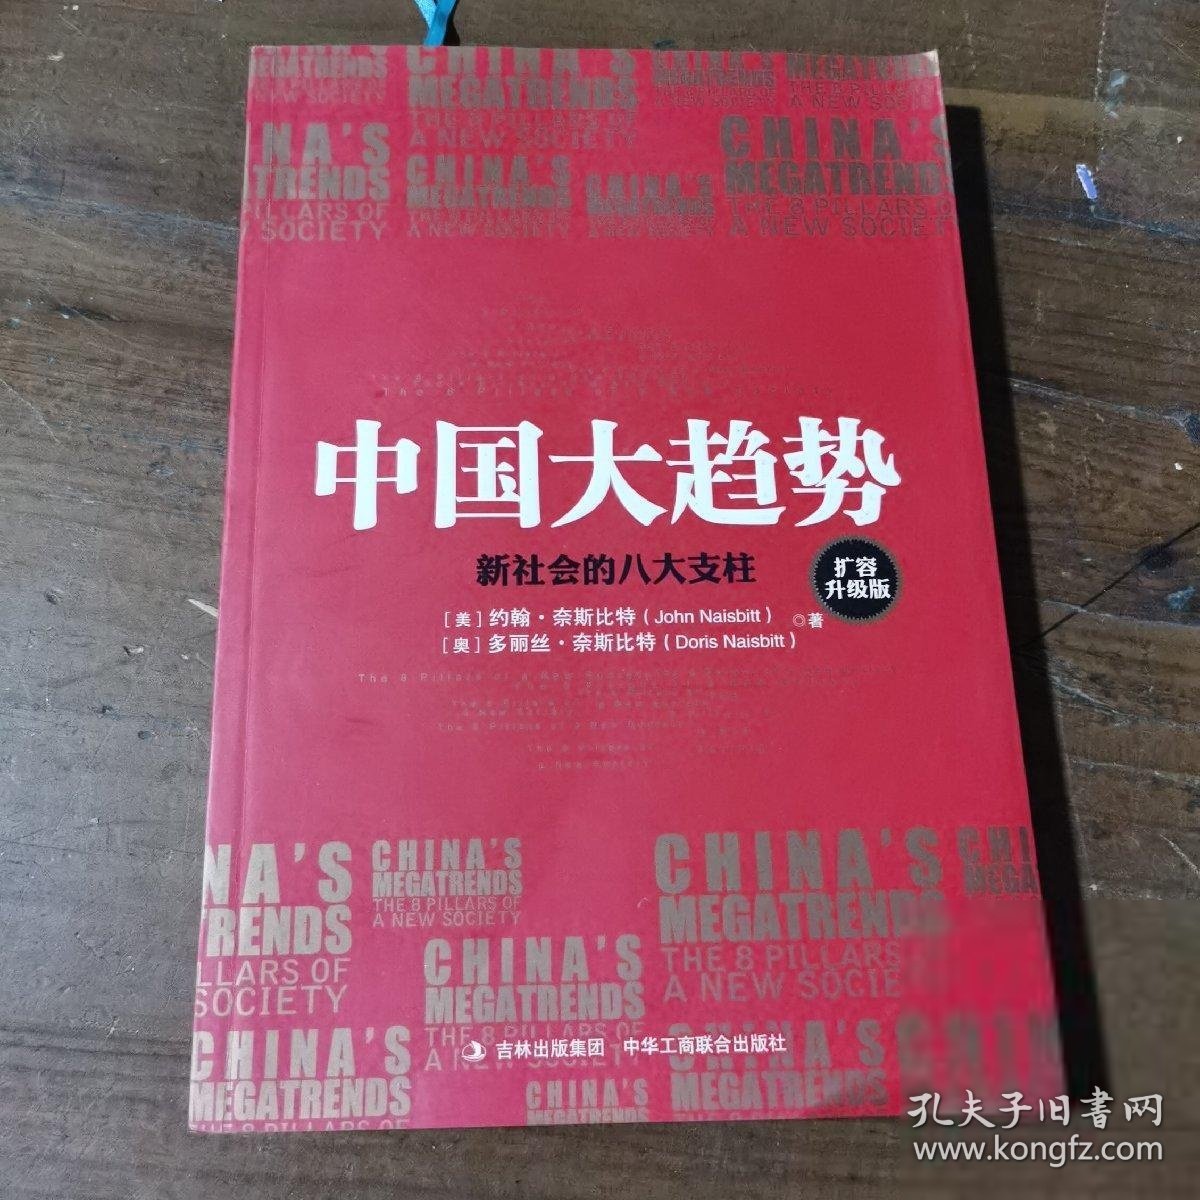 中国大趋势--新社会的八大支柱(扩容升级版)[美]约翰·奈斯比特、[奥地利]多丽丝·奈斯比特  著；魏平  译中华工商联合出版社